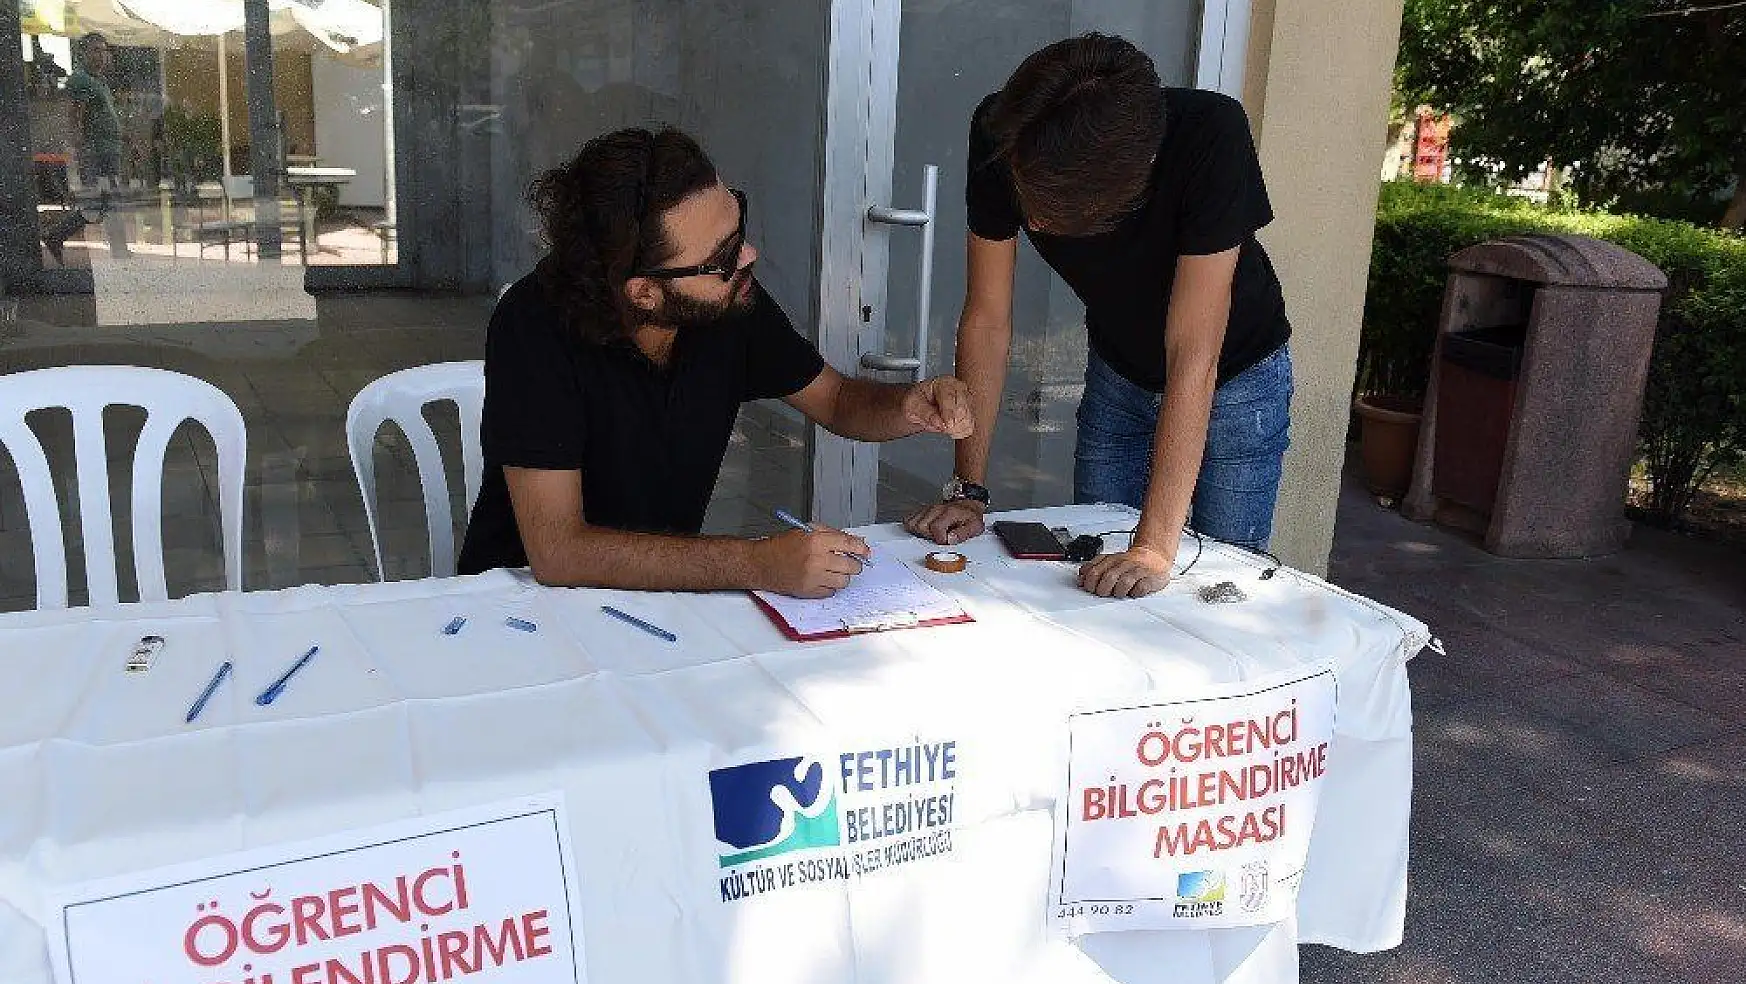 Fethiye Belediyesi'nden öğrencilere bilgilendirme masası